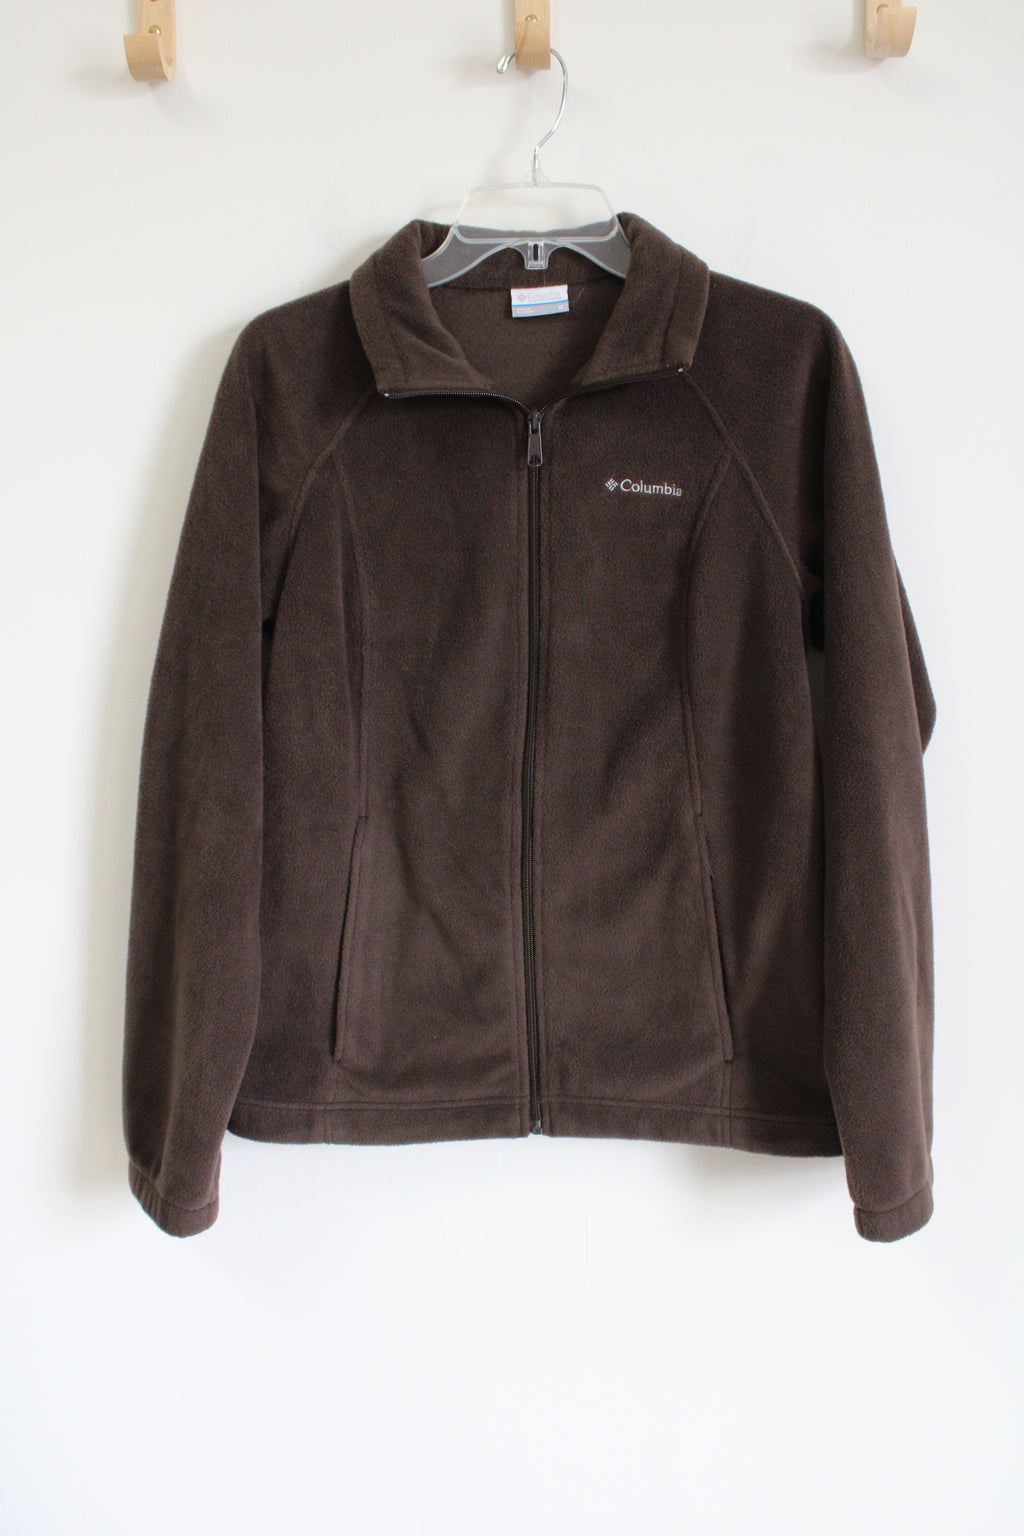 Columbia Brown Fleece Zip Up Jacket | M